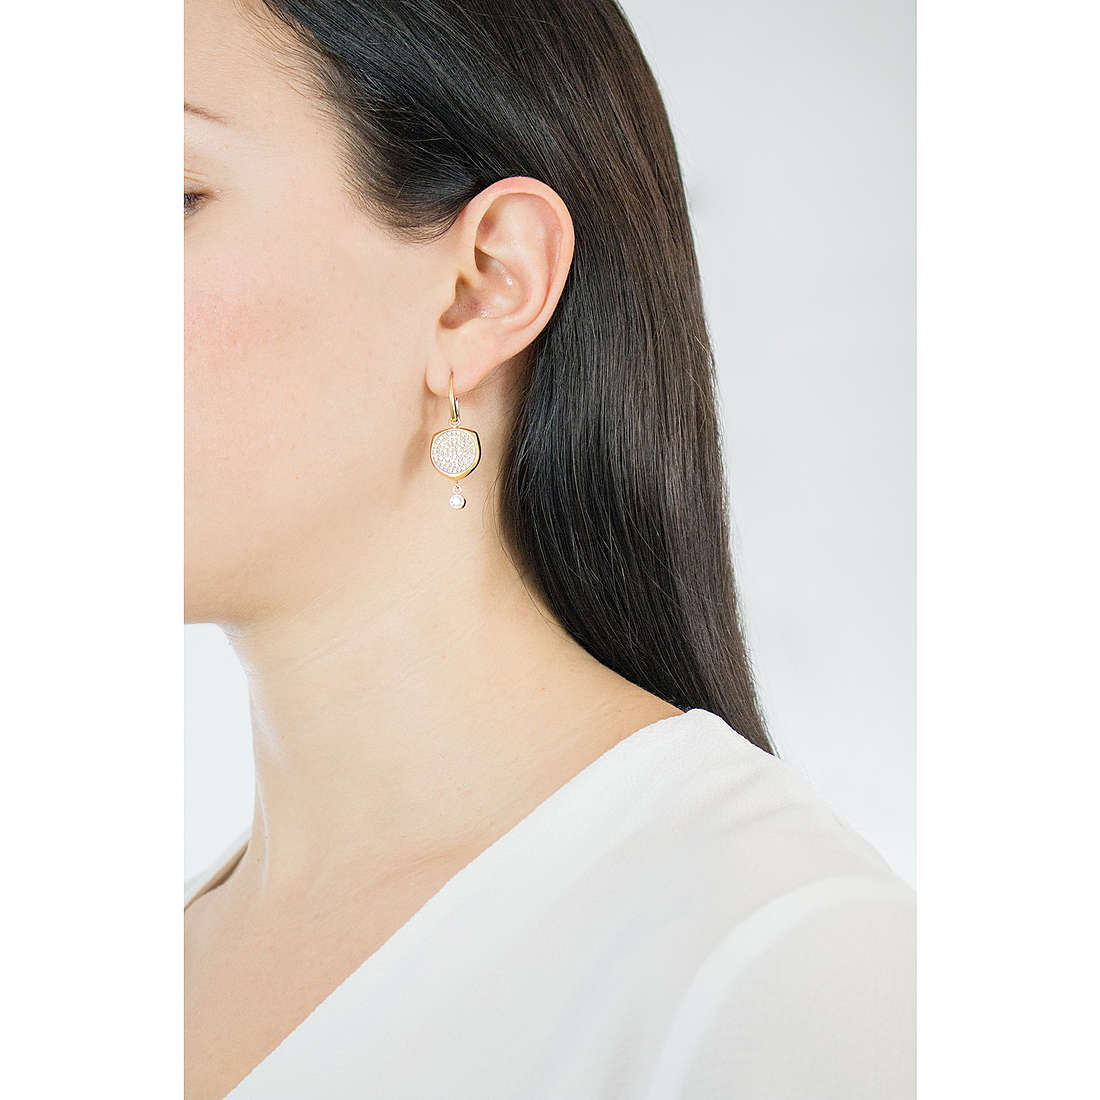 Michael Kors earrings Brilliance woman MKJ6763710 wearing